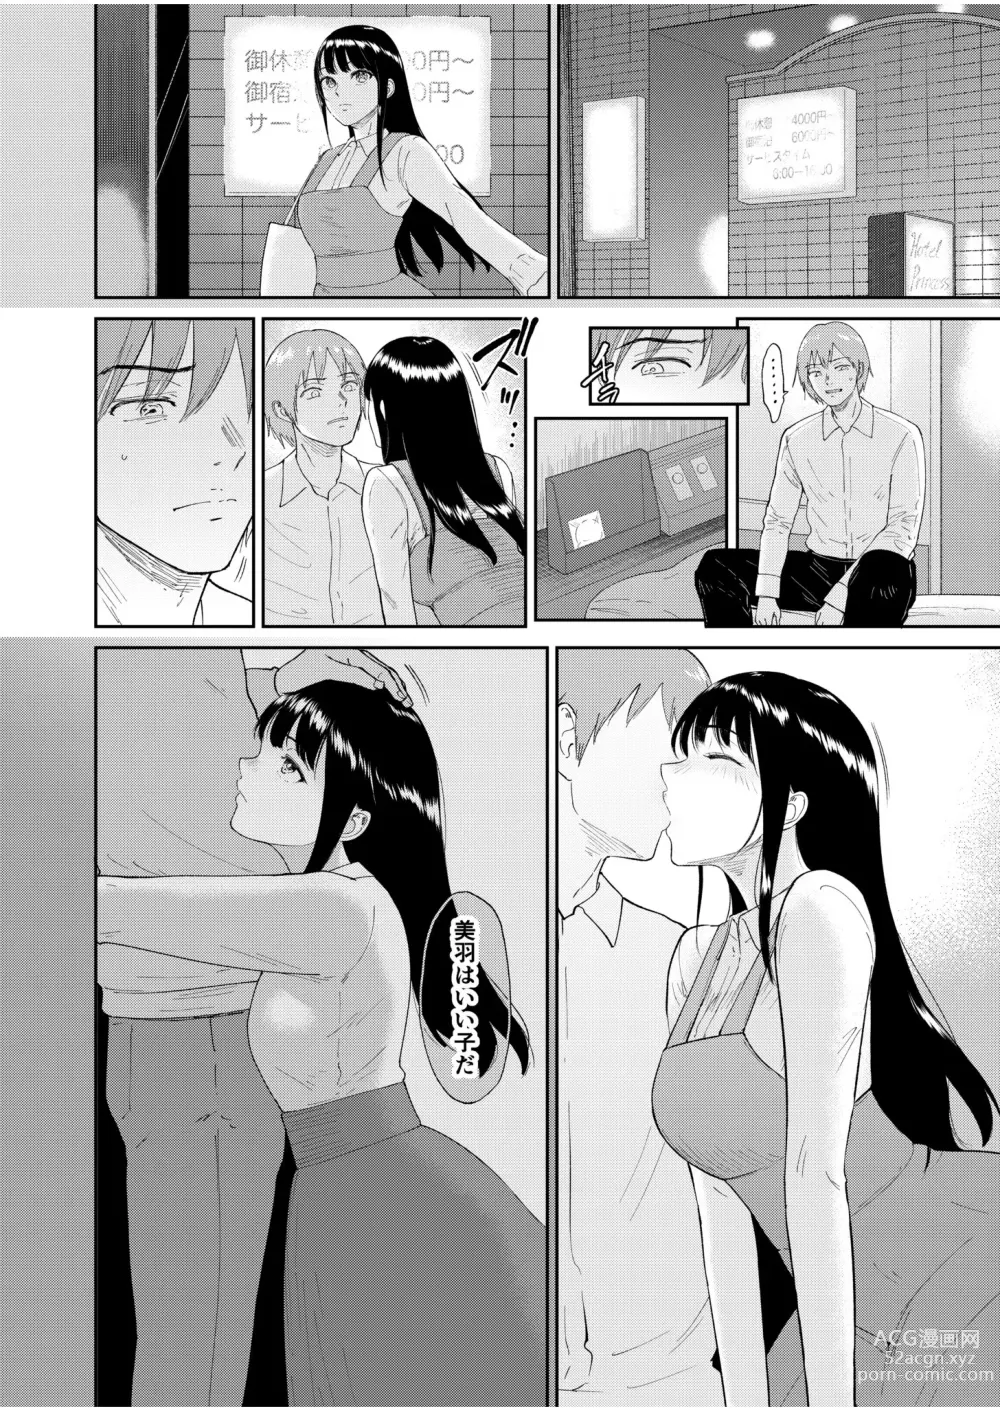 Page 12 of manga Iinarikko 5